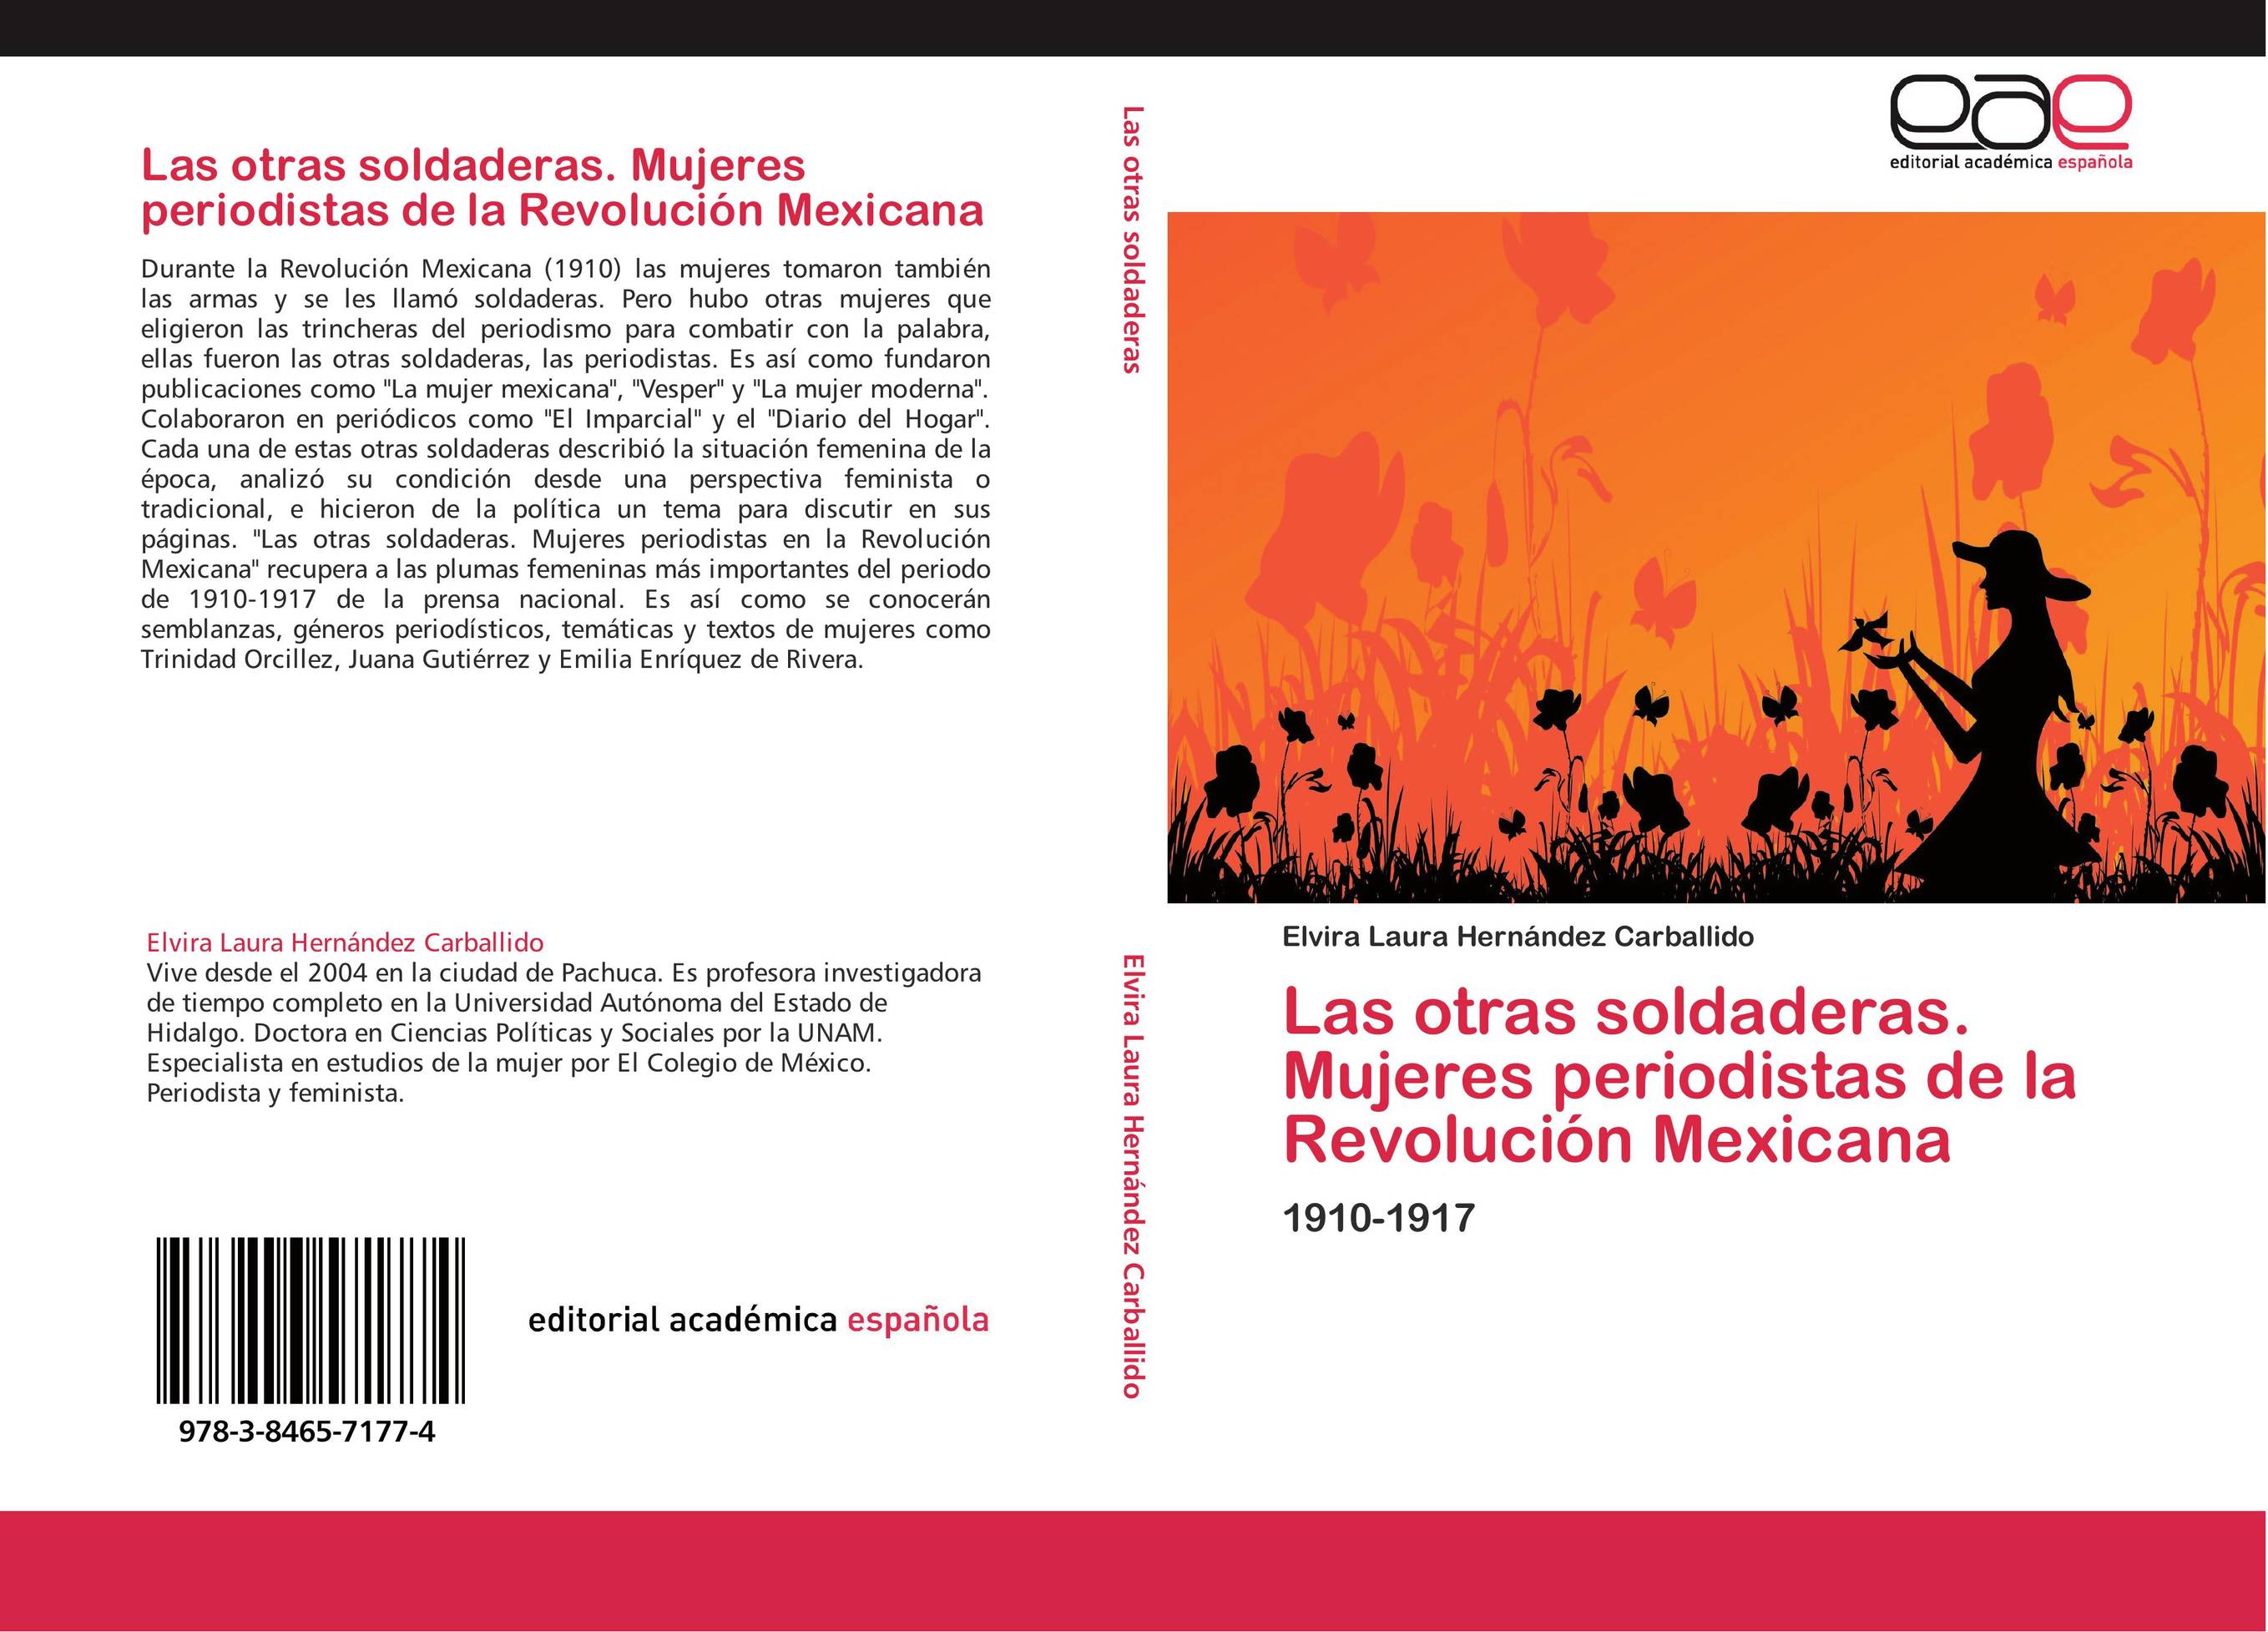 Las otras soldaderas. Mujeres periodistas de la Revolución Mexicana